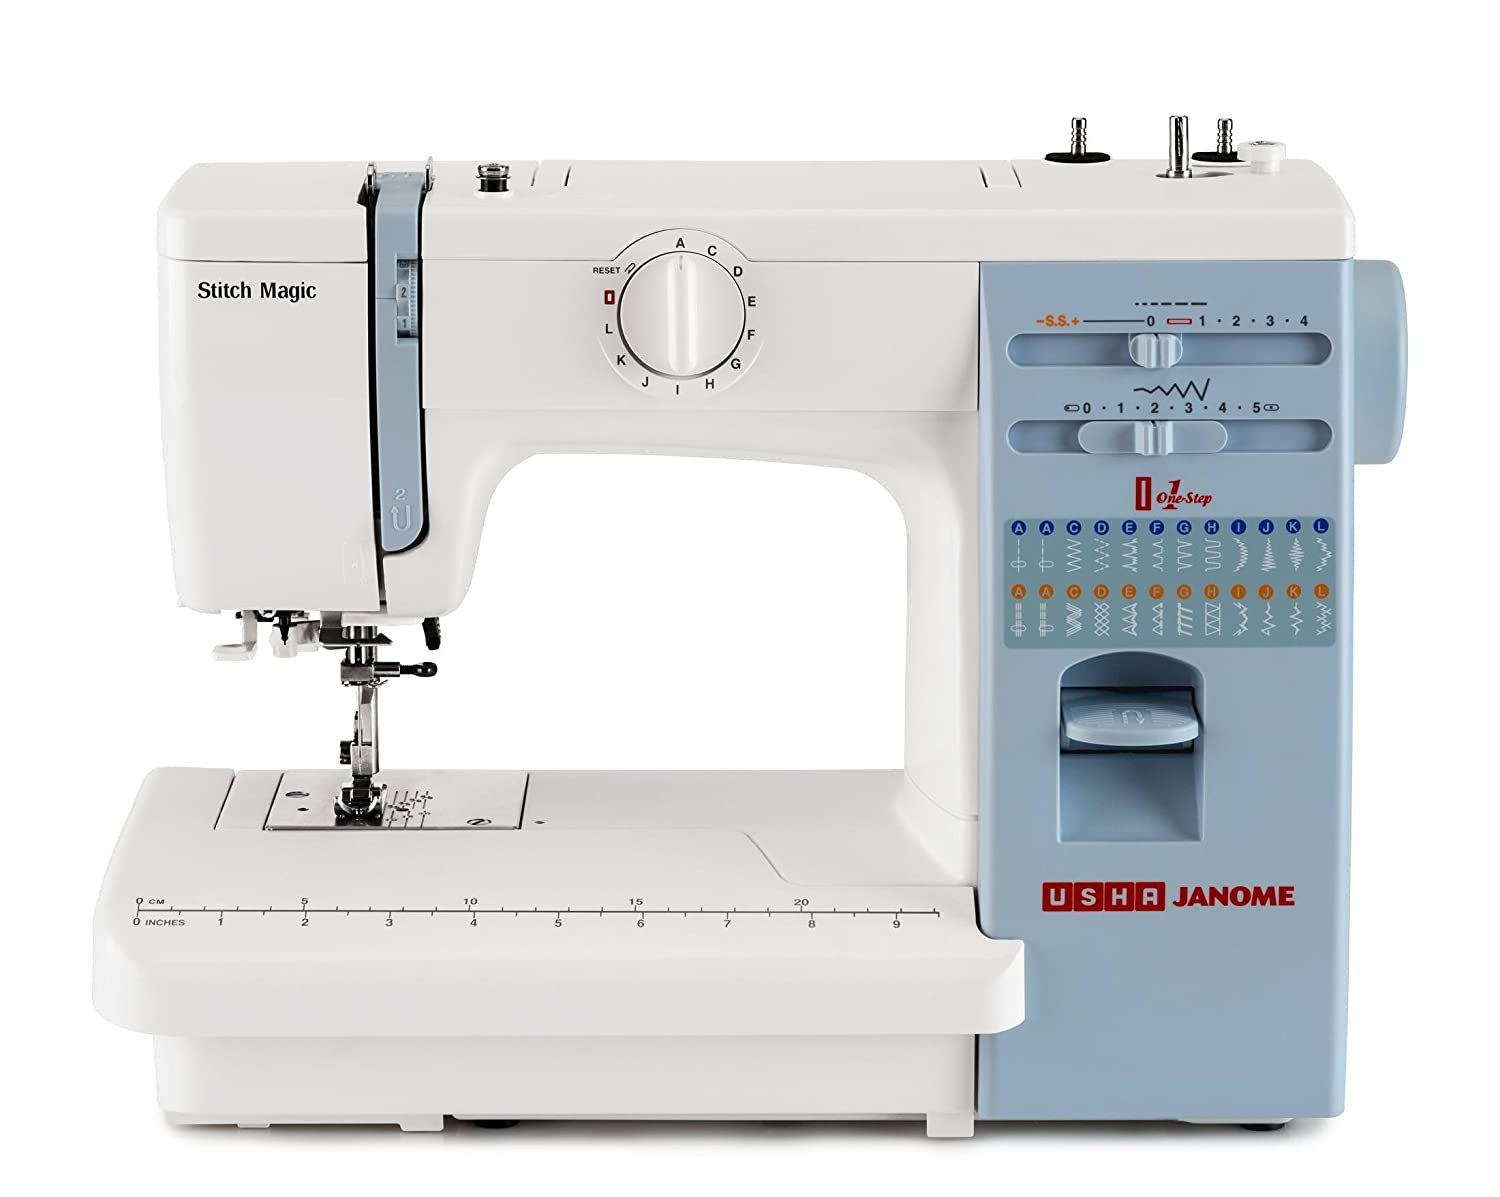 Usha Janome Automatic Stitch Magic Sewing Machine